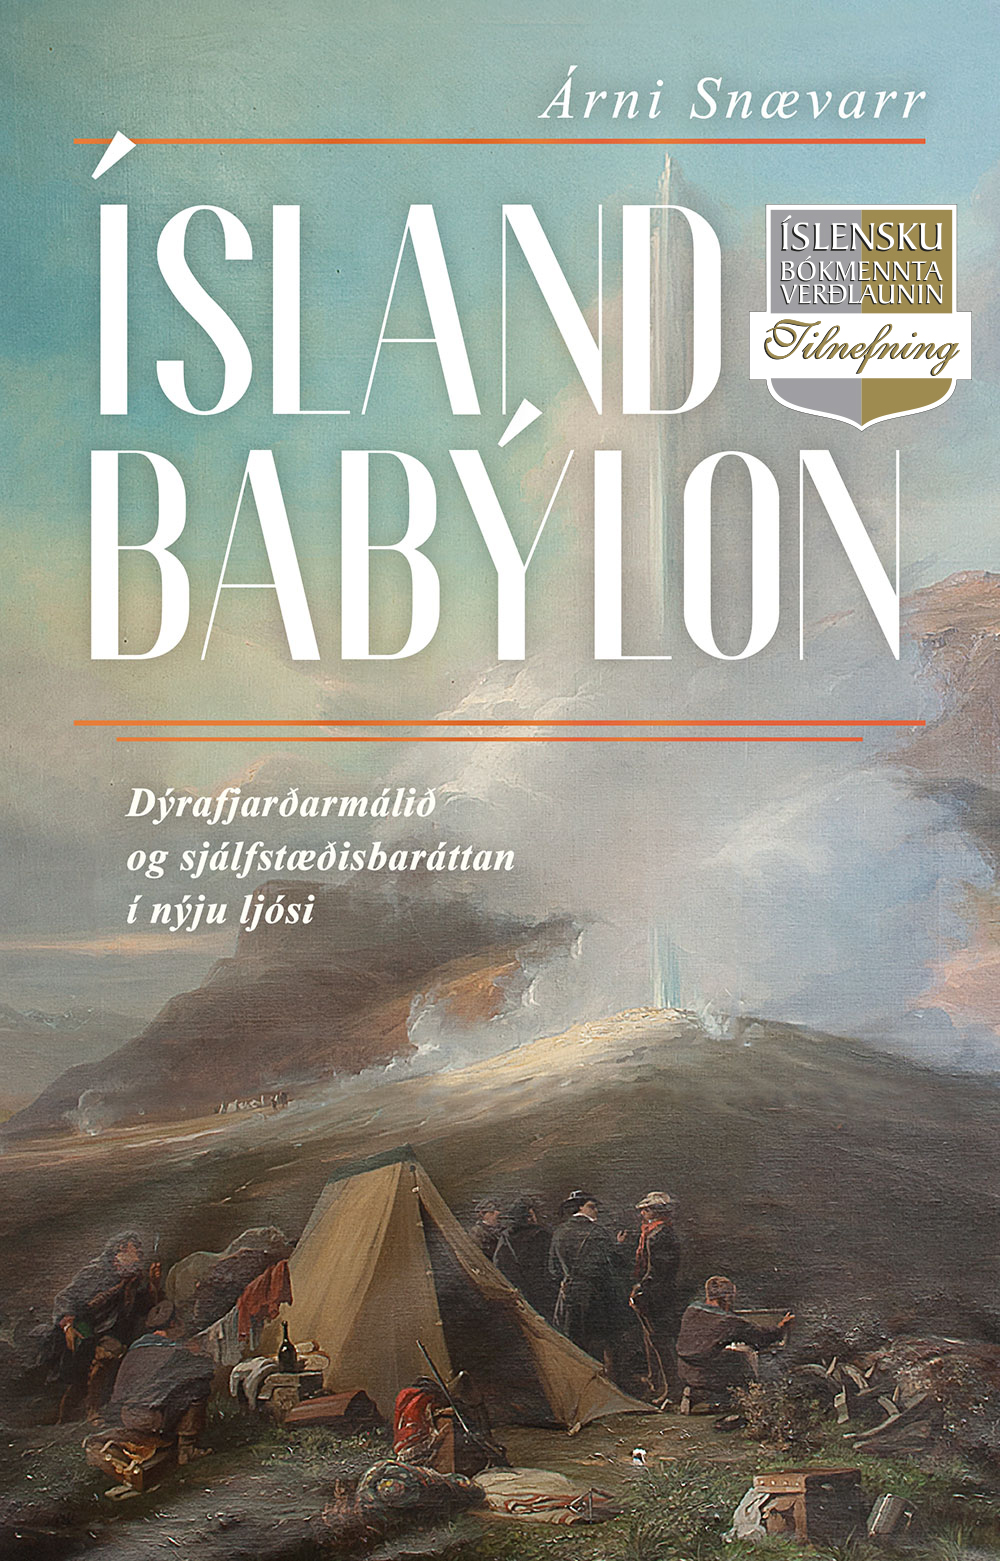 Island_Babilon_Kapa.indd